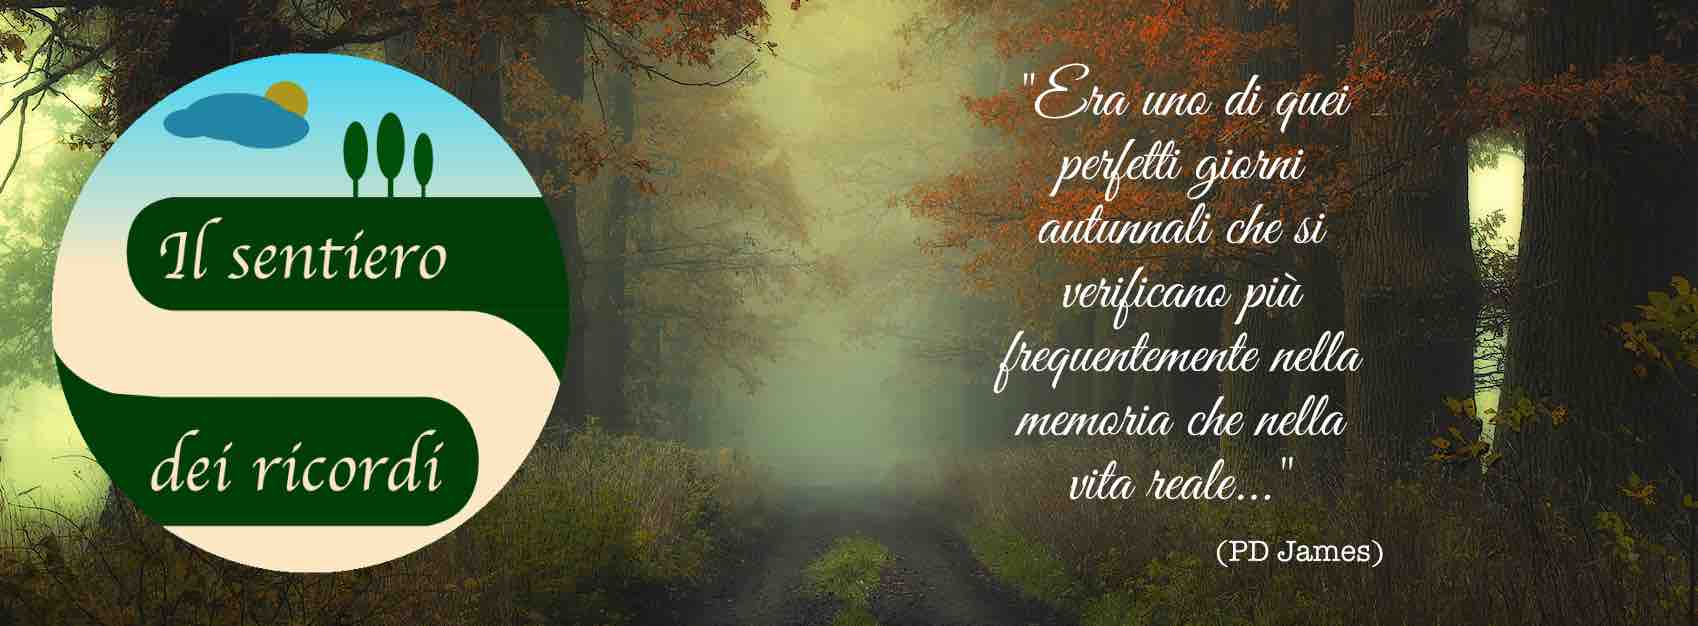 Onoranze Funebri Ricca Eugenia (Il Sentiero dei ricordi) sfondo pagina di Facebook.